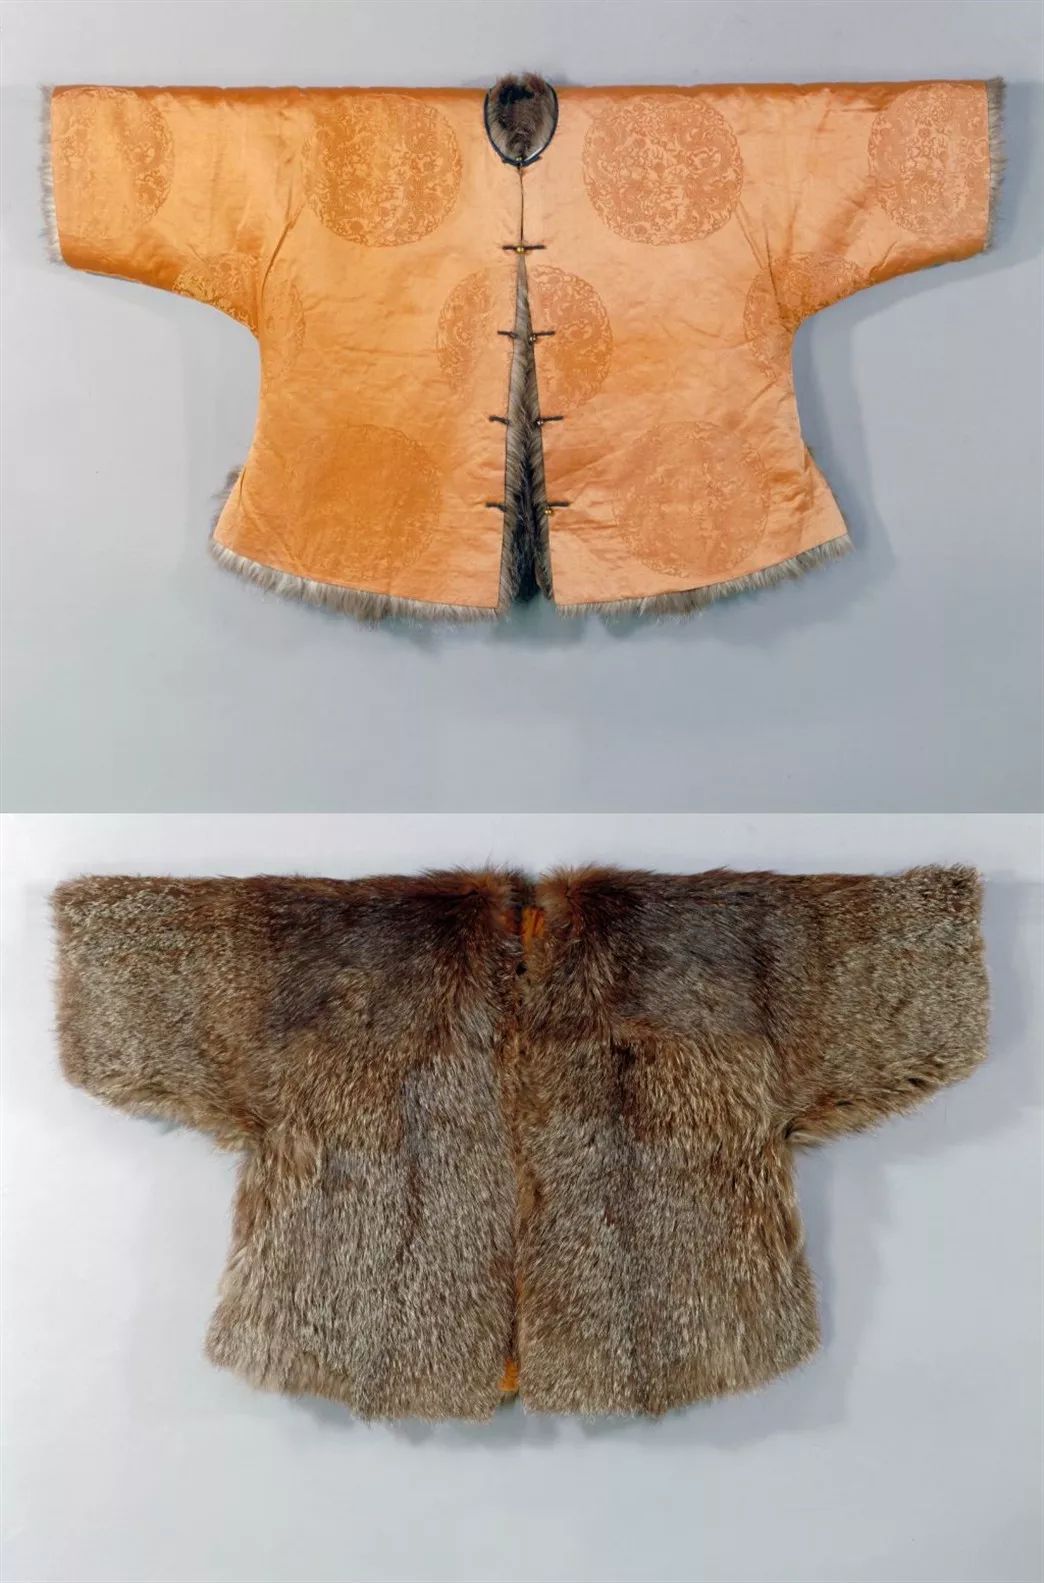 传》剧照 事实上,古人的过冬衣物比戏服更精美,齐全,暖帽,皮褂,大氅